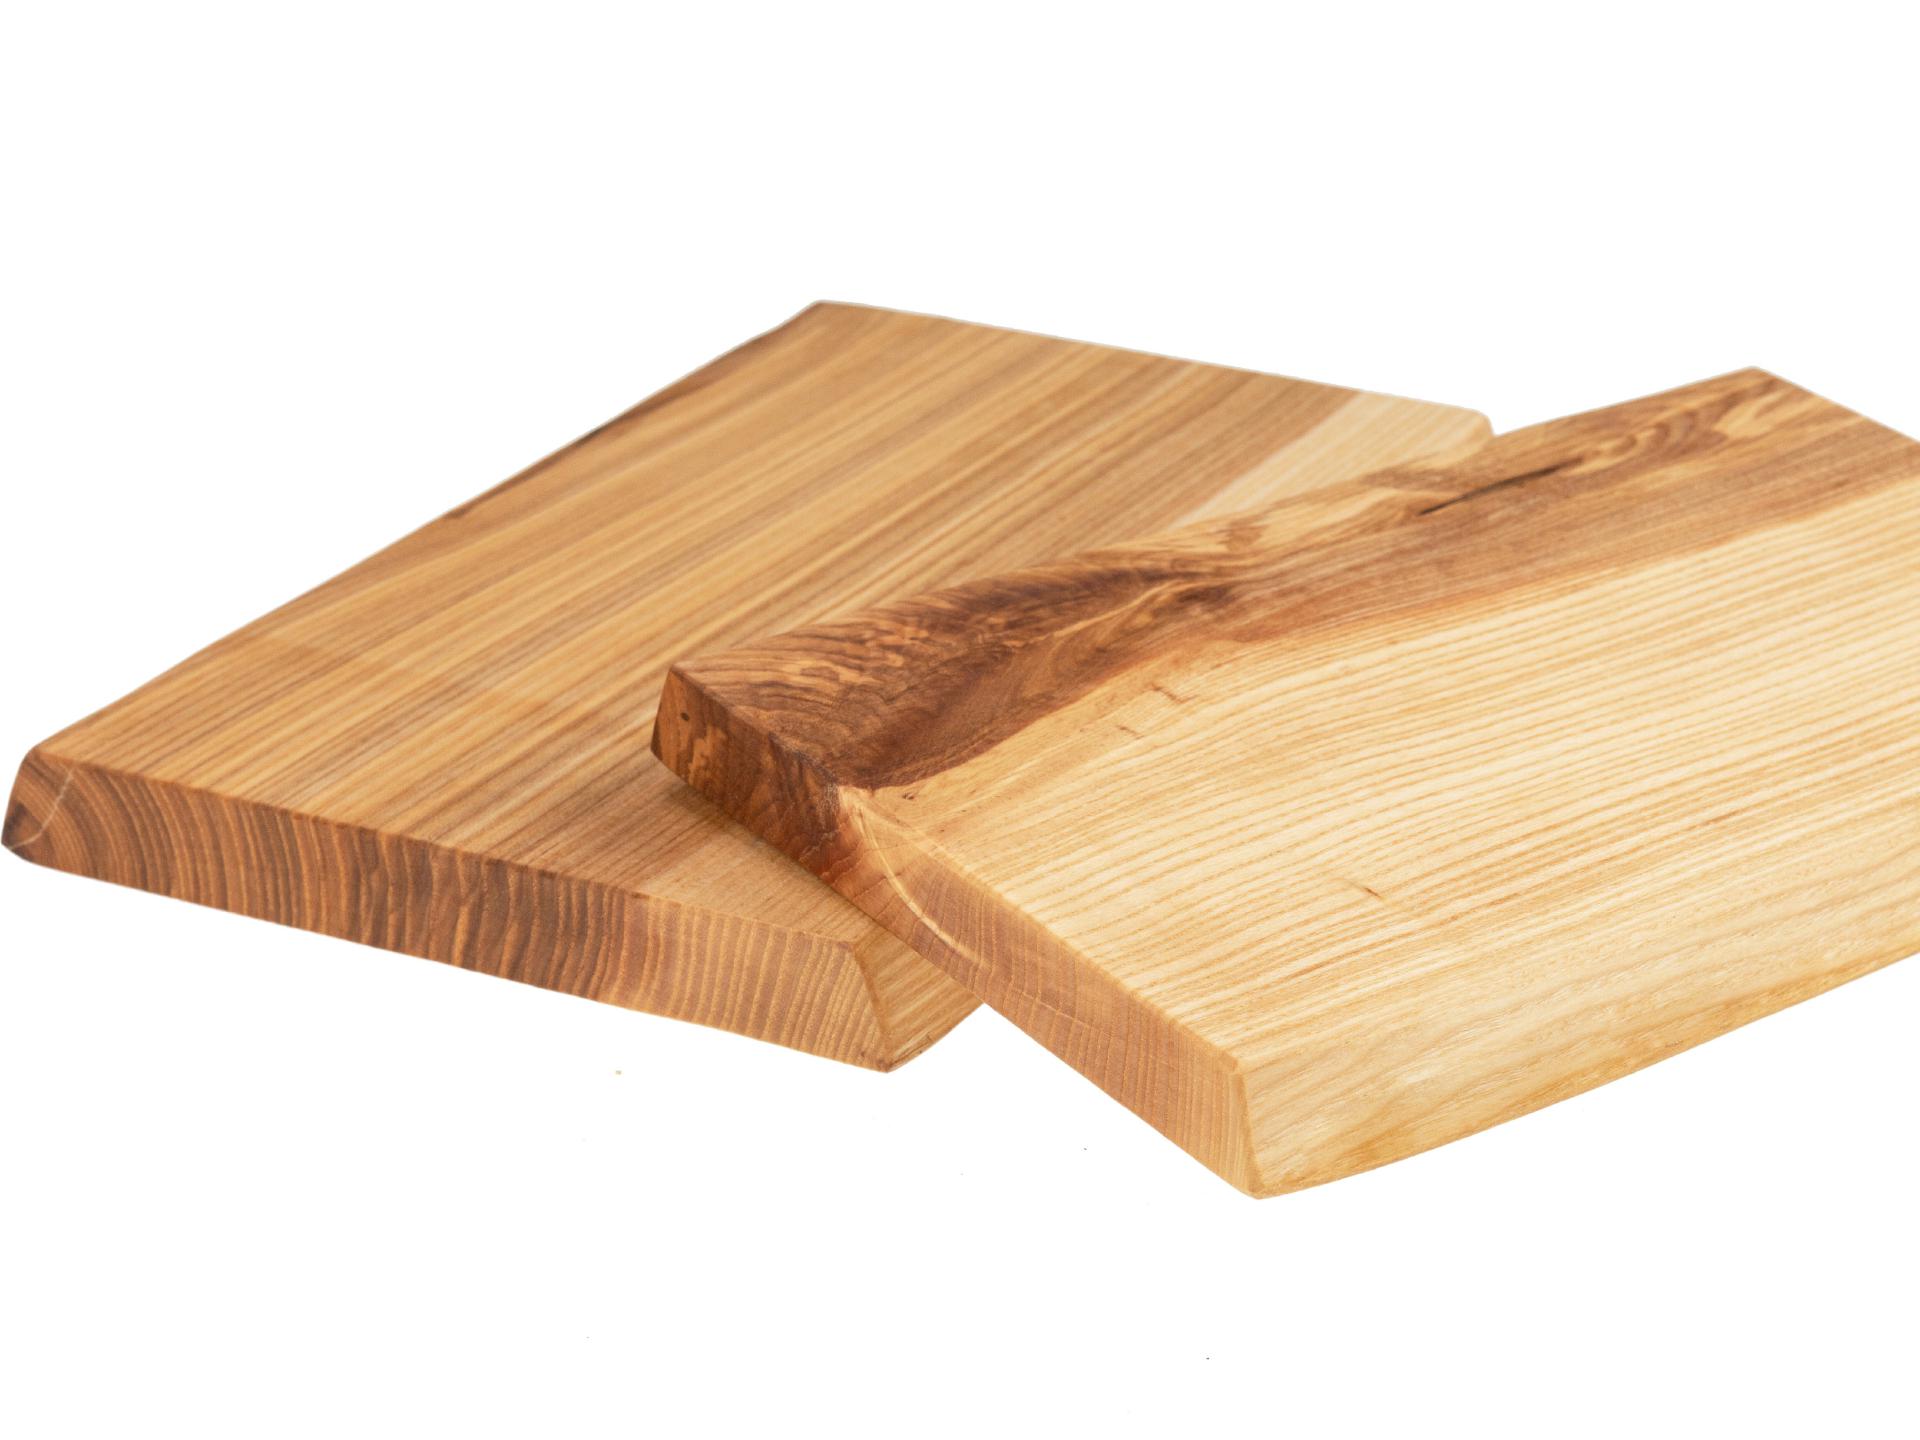 Holz Schneidebrett aus Kern Esche geölt mit Baumkante geschliffen 22mm dick 32 x 18-20 cm